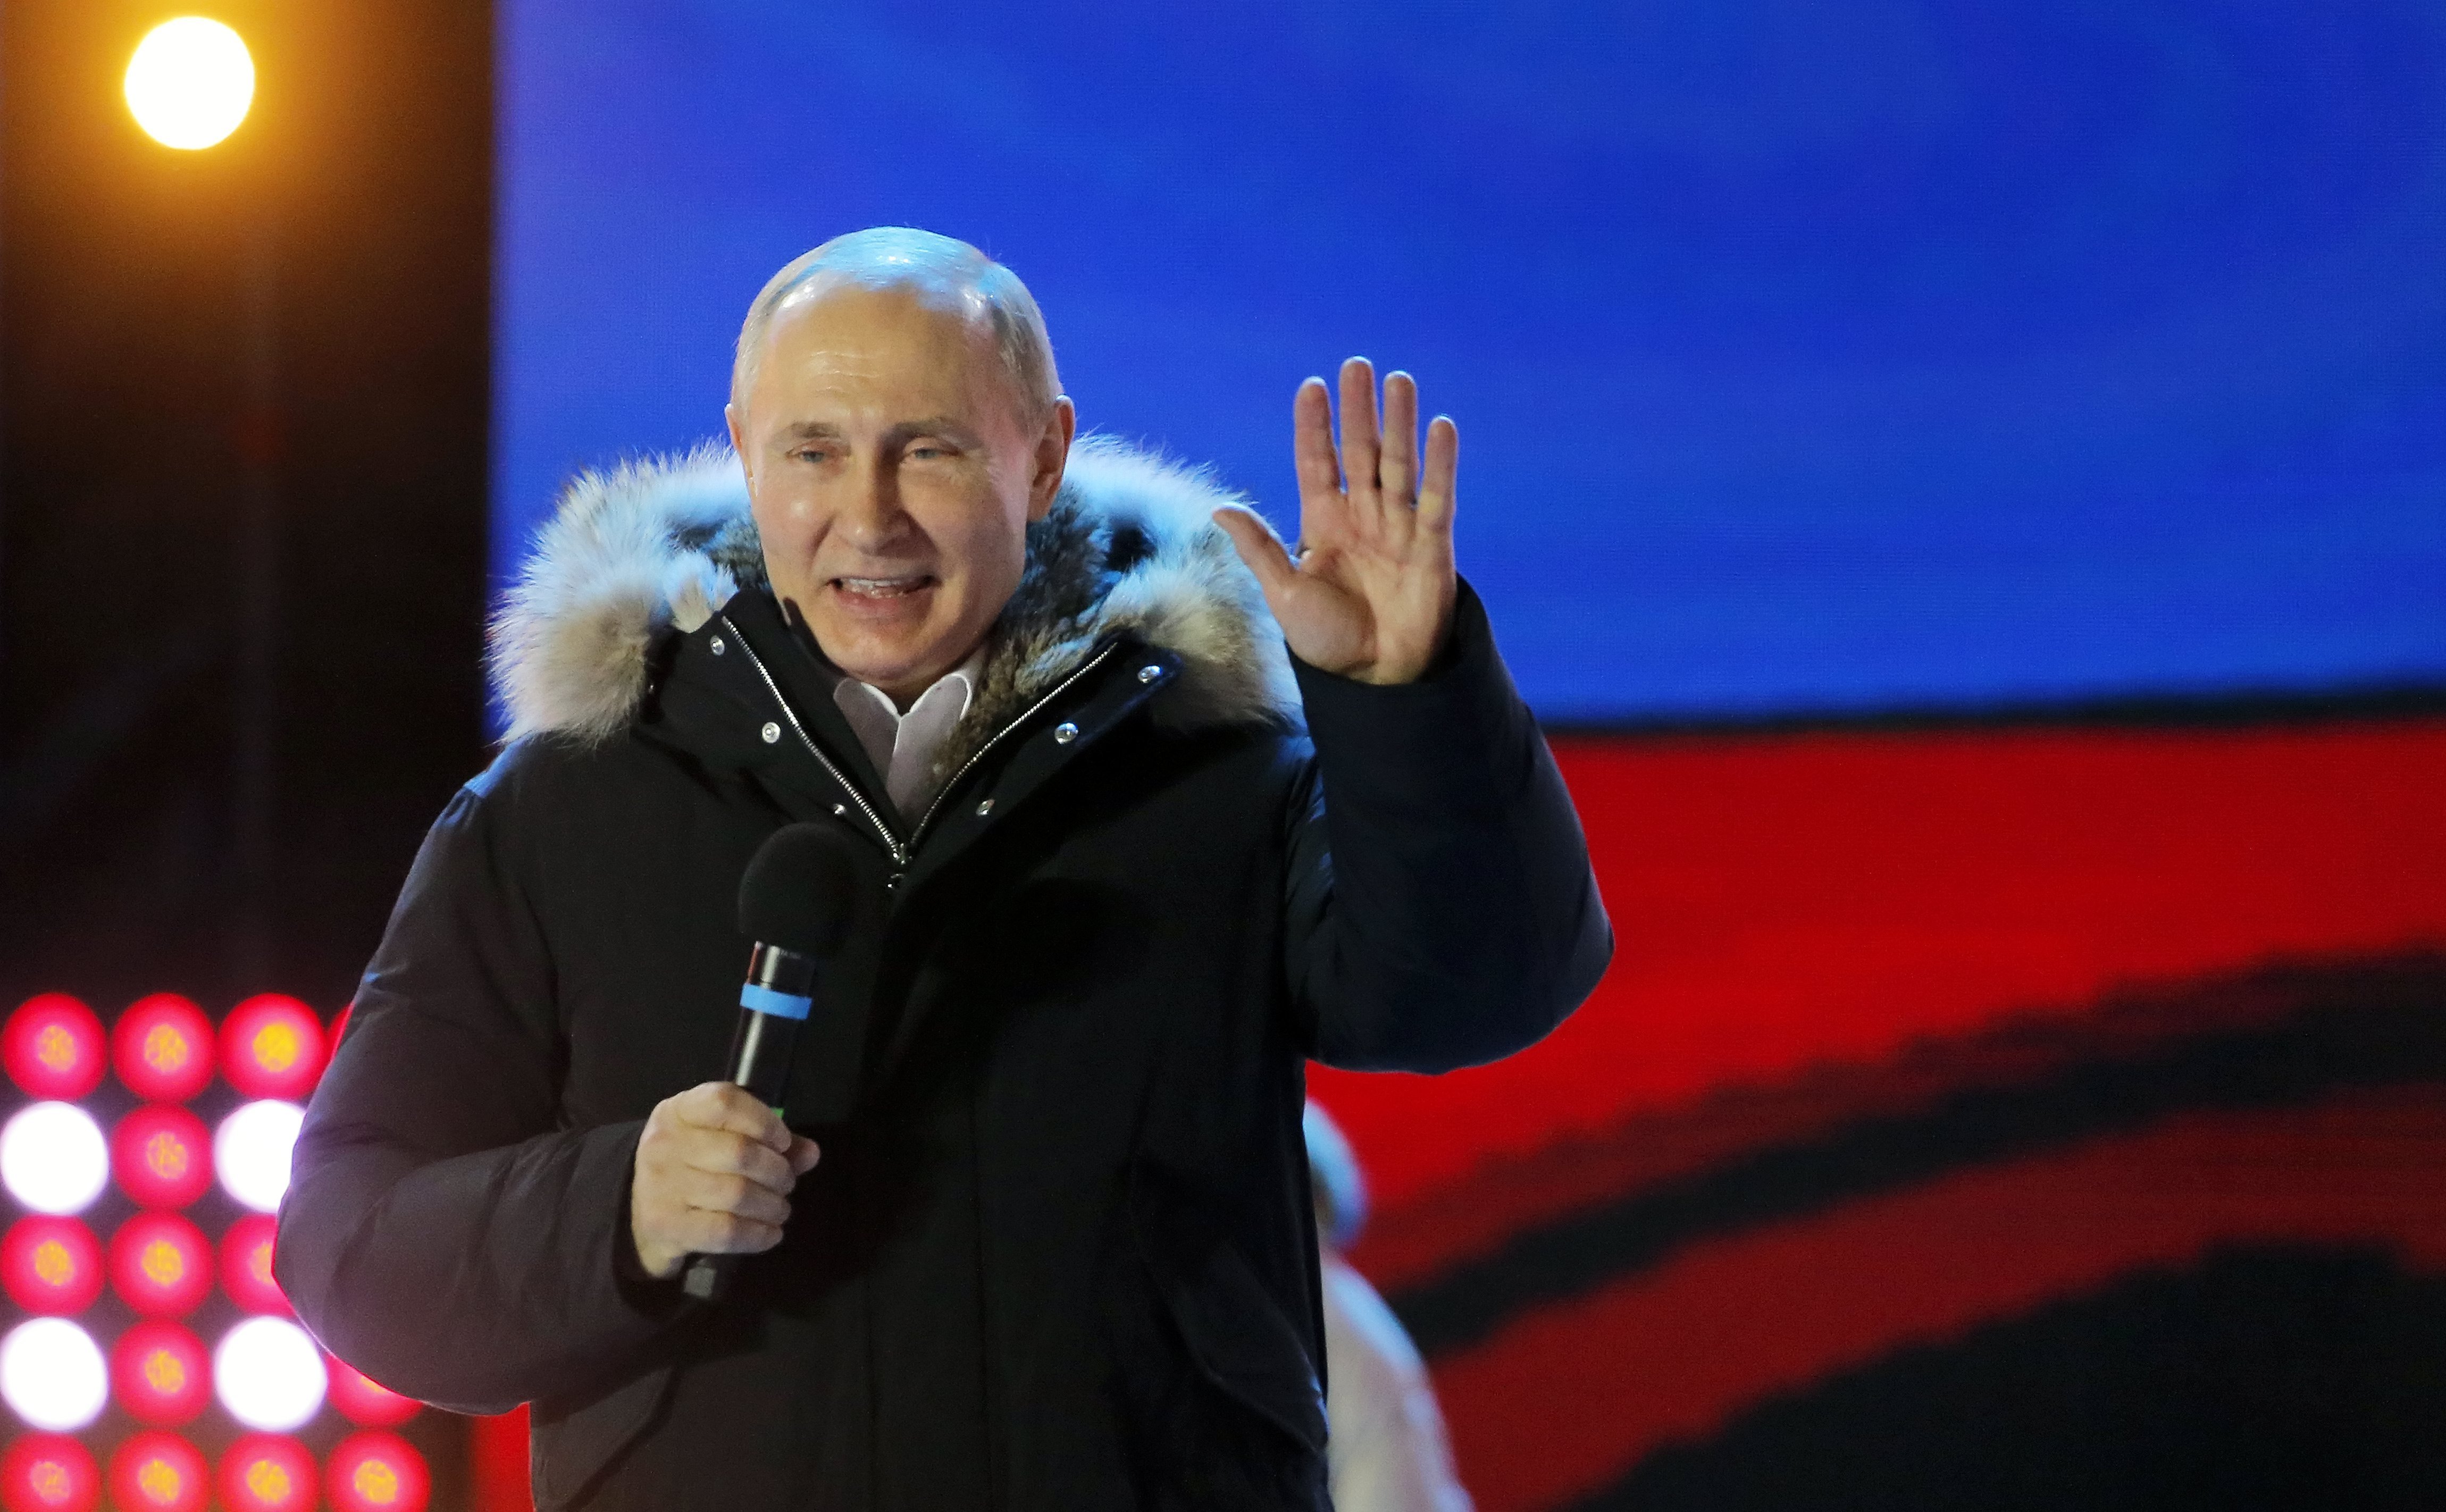 Històrica victòria de Putin a Rússia amb un 76% dels vots